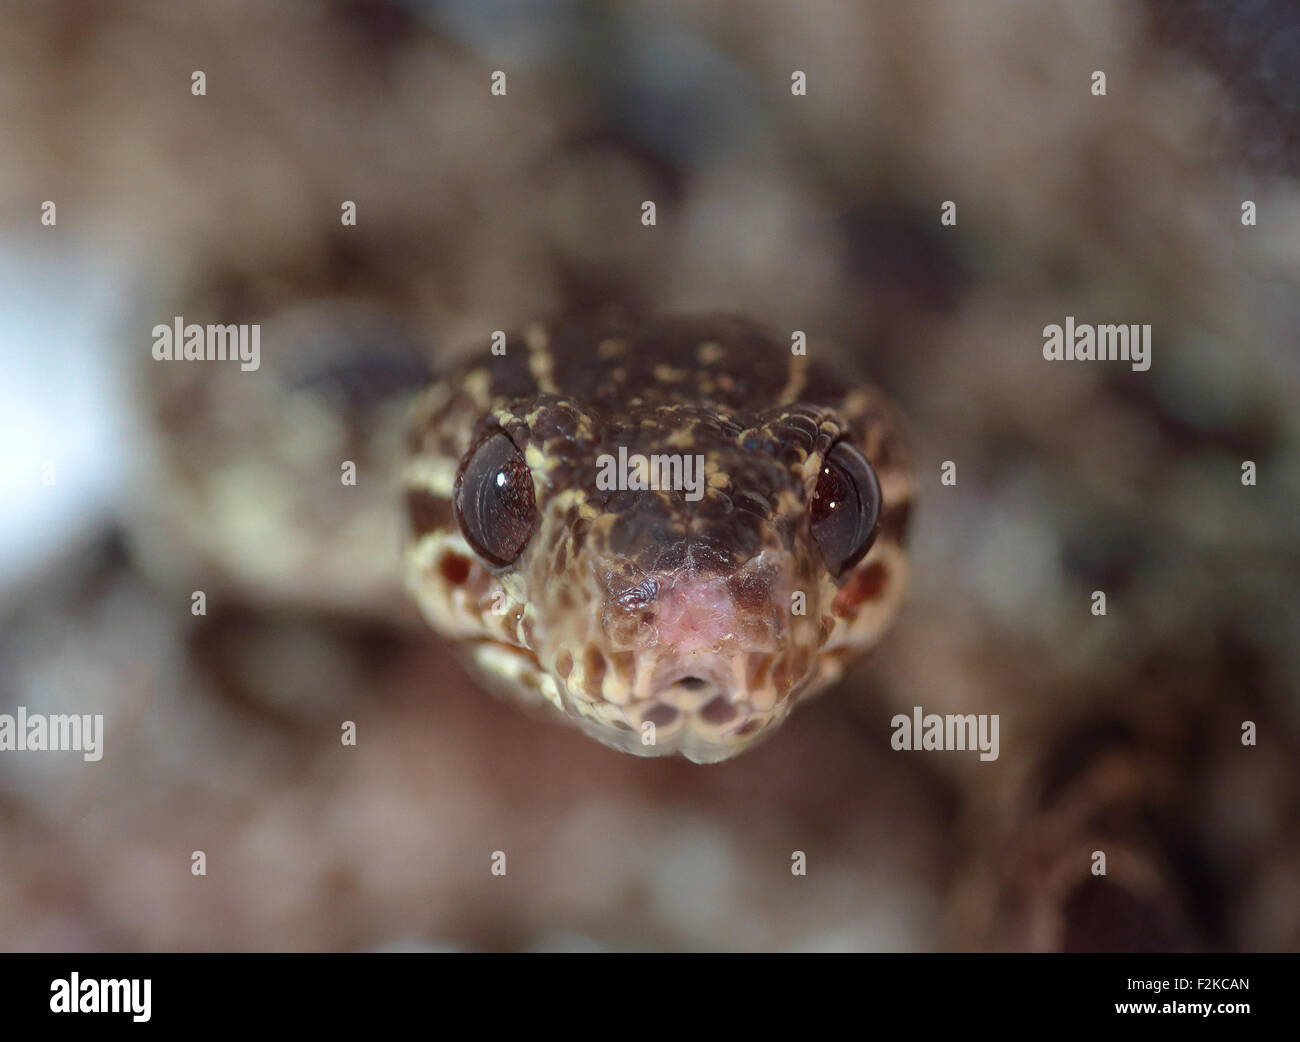 Primo piano vista frontale di un serpente puntando alla fotocamera con bassa profondità di campo Foto Stock